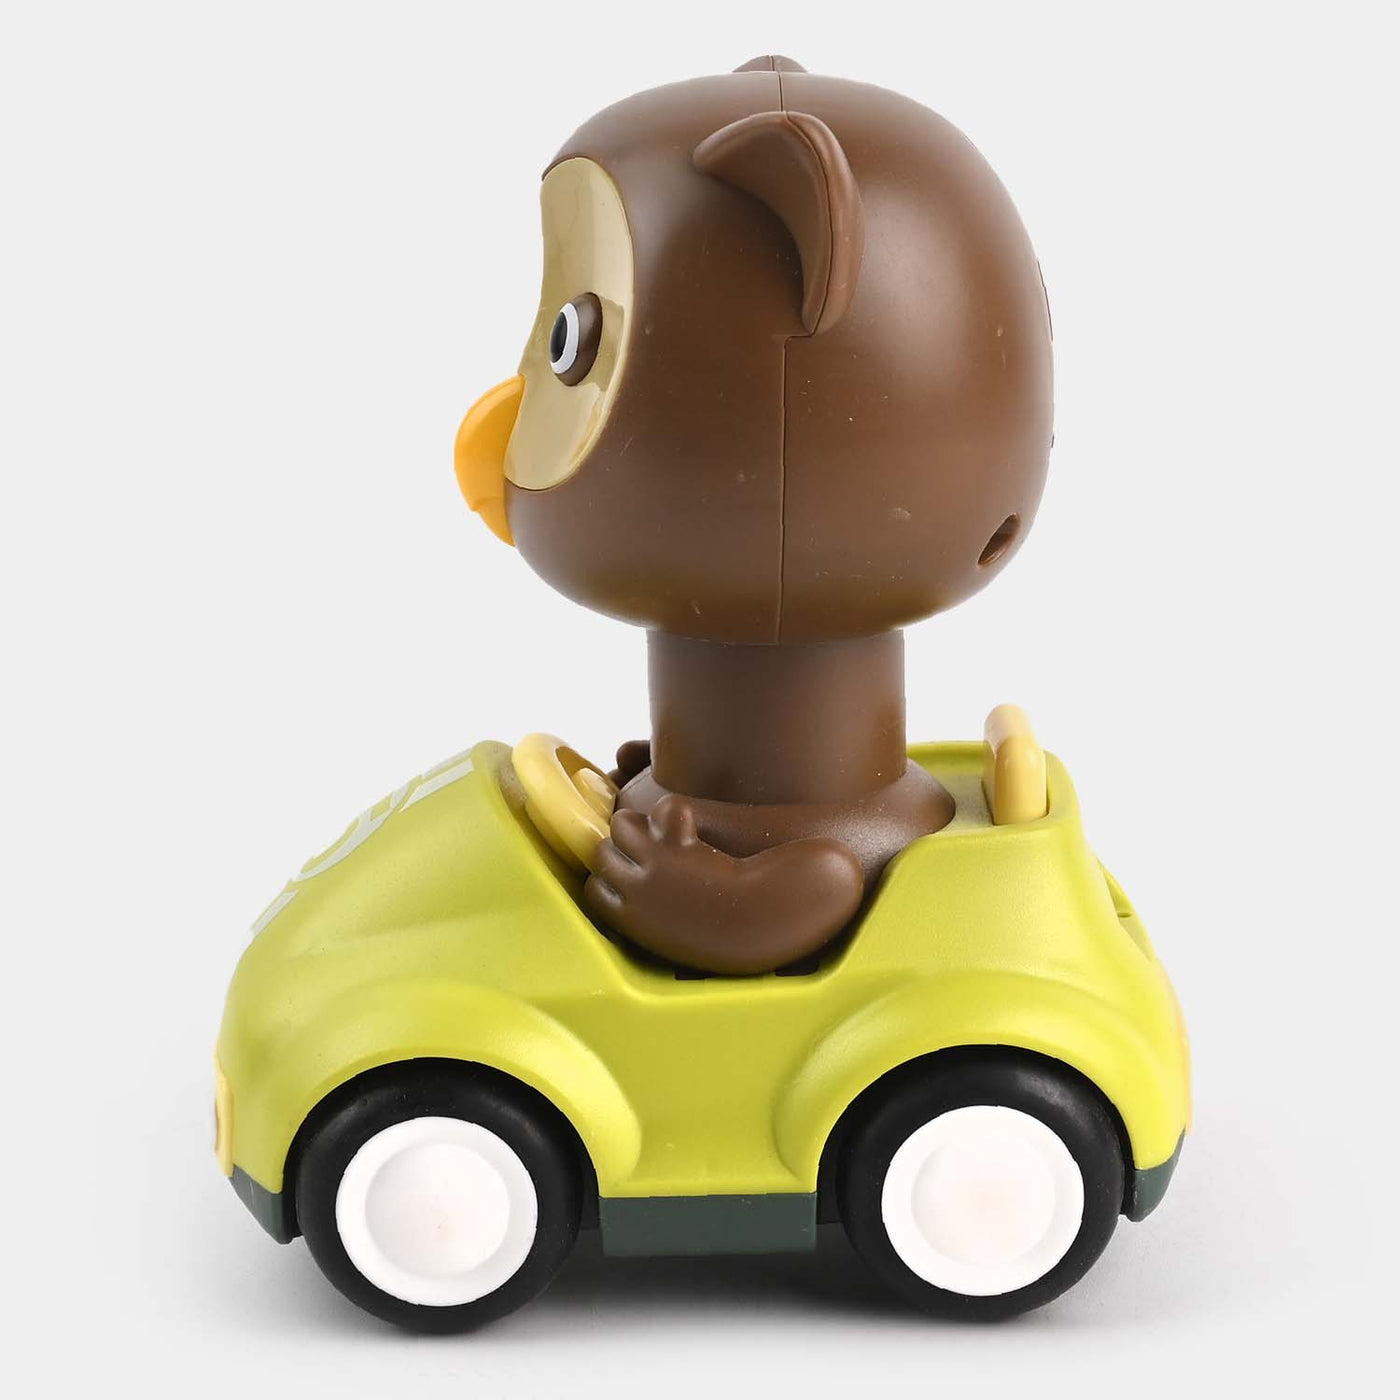 Four-Wheel Cartoon Car With Owl Toy